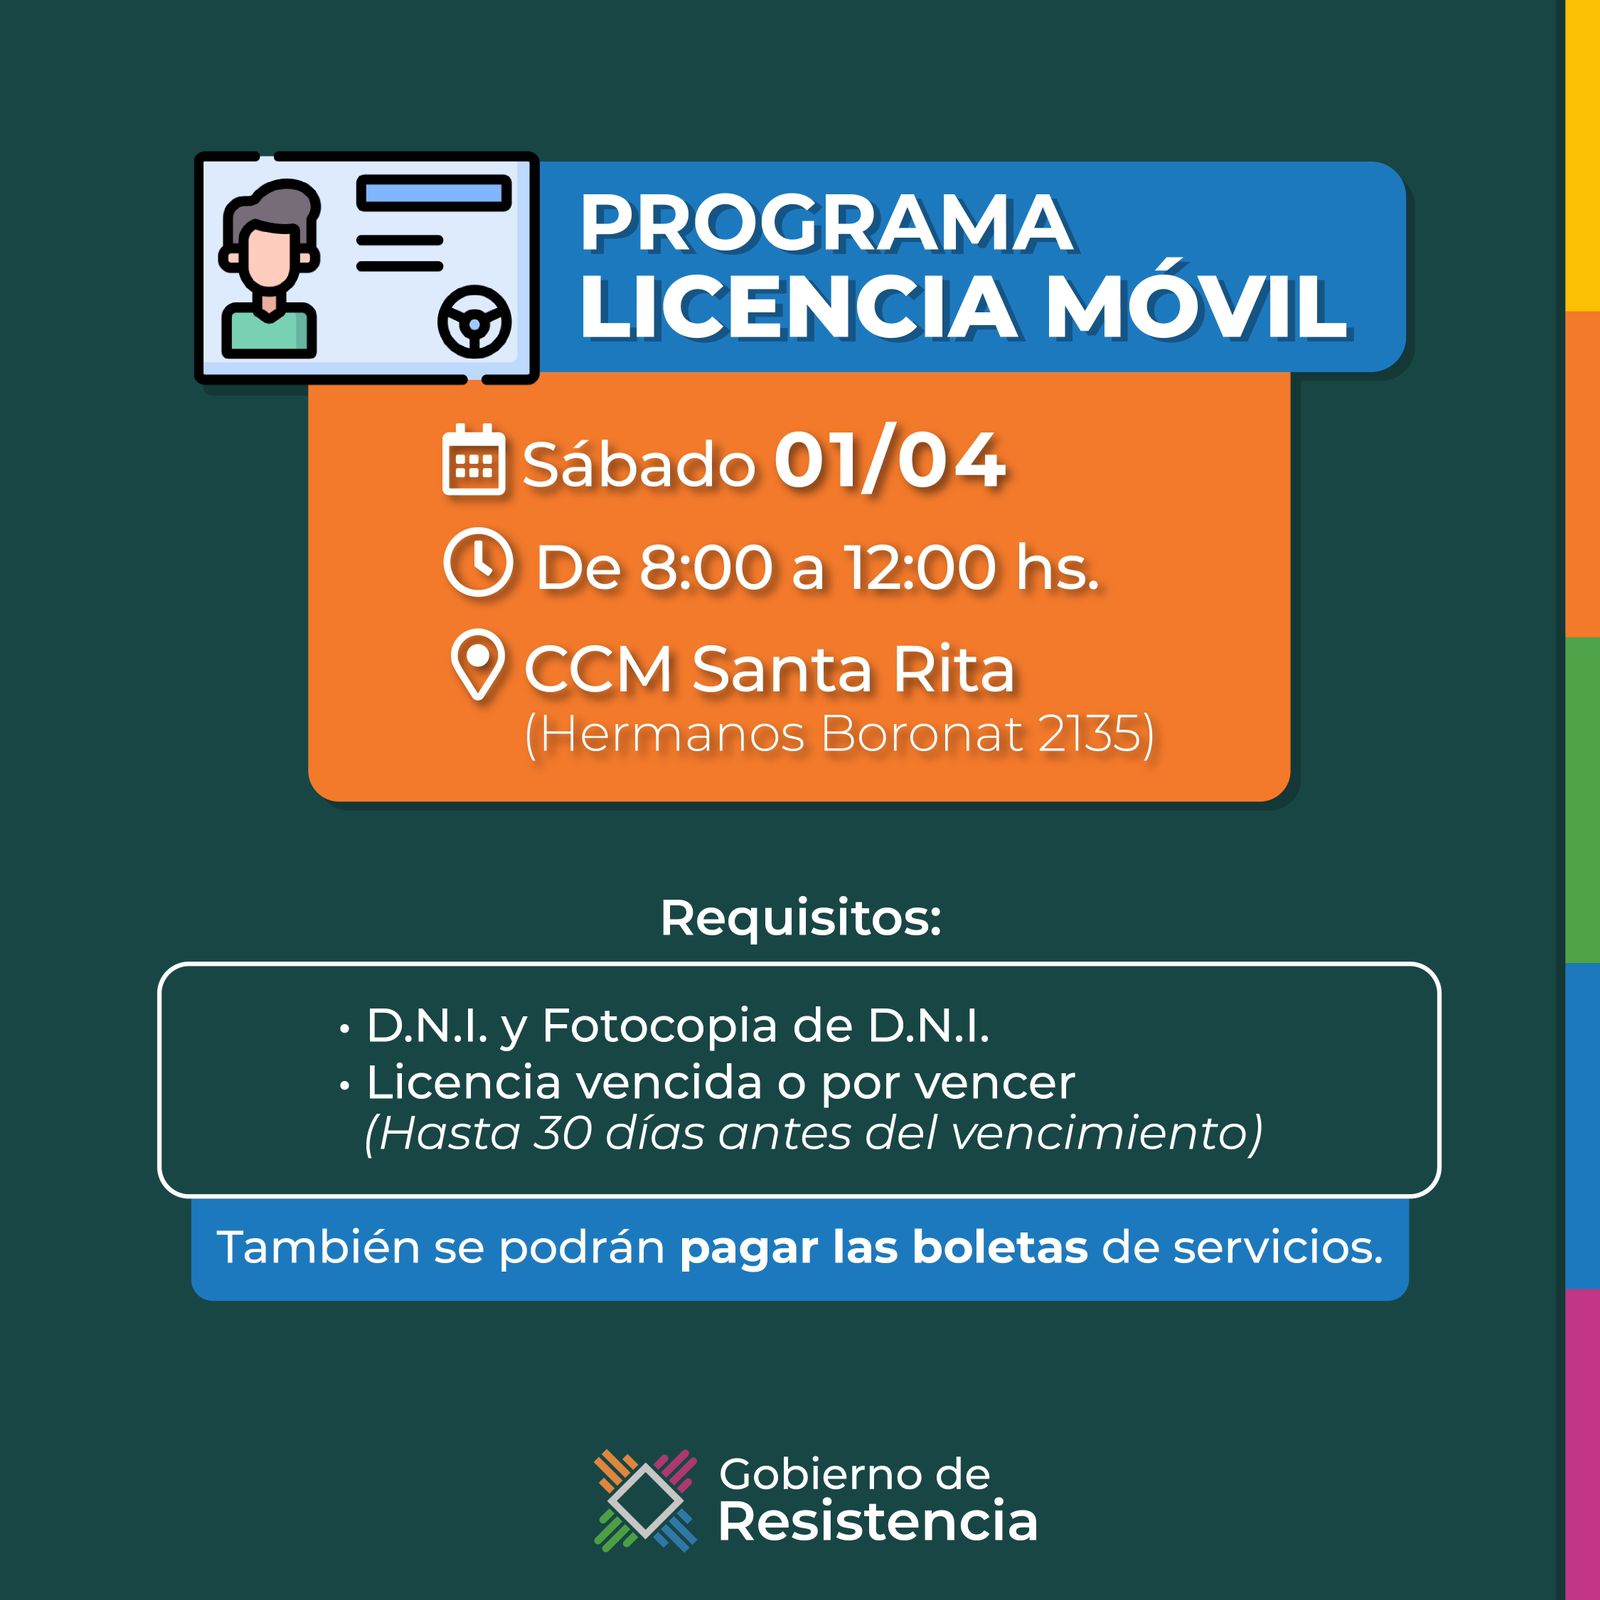 El programa Licencia móvil estará este sábado 01 de abril en el CCM Santa Rita